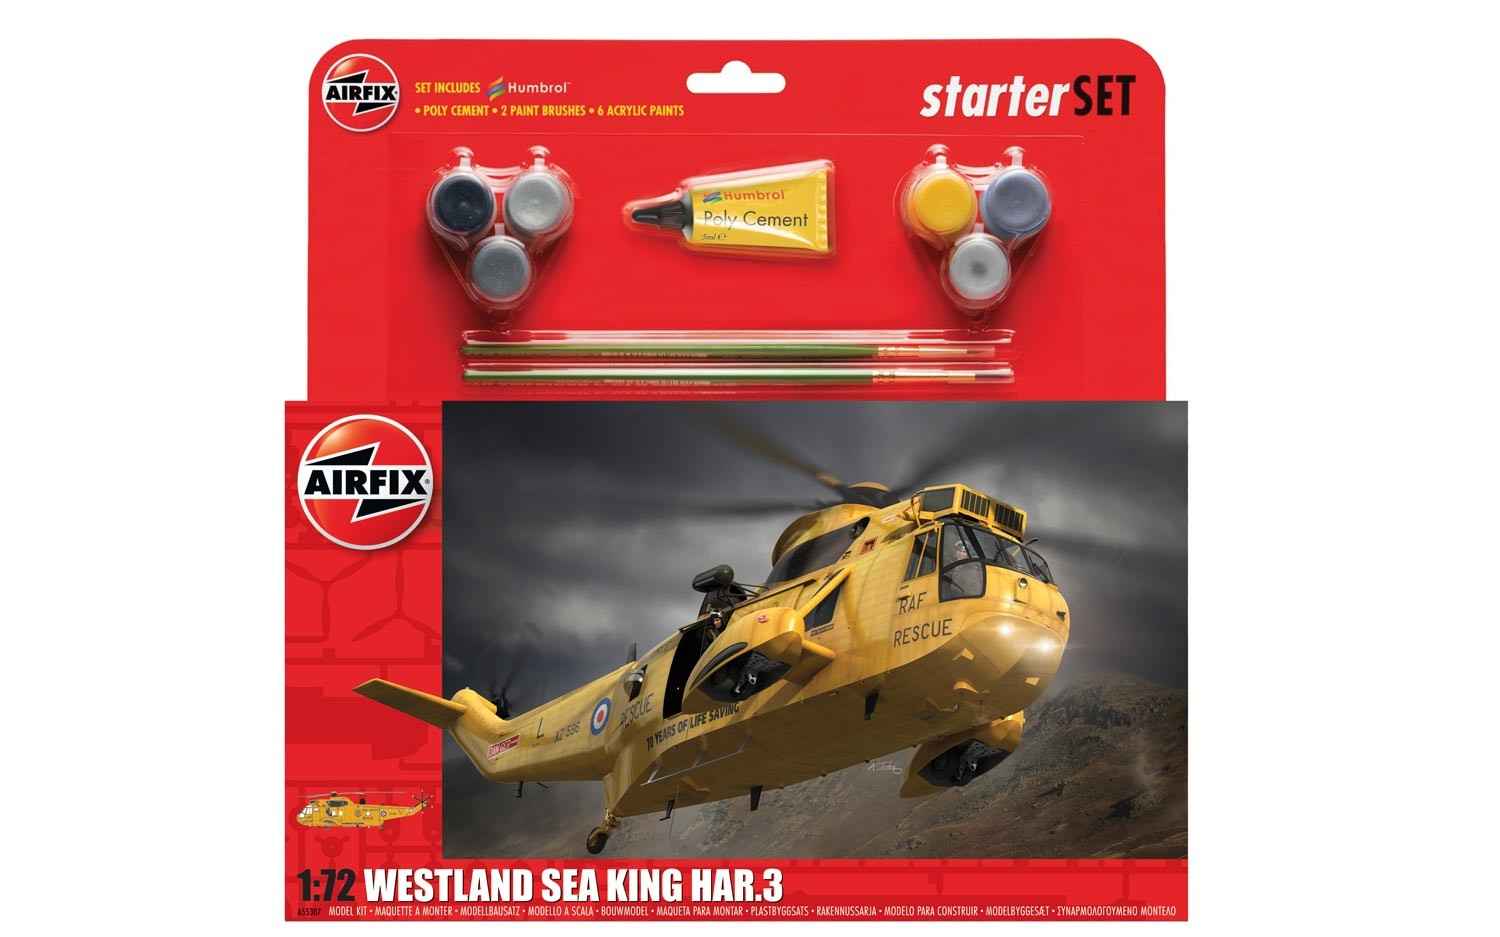 Airfix Westland Sea King Har.3 starter set in 1:72 bouwpakket met lijm en verf